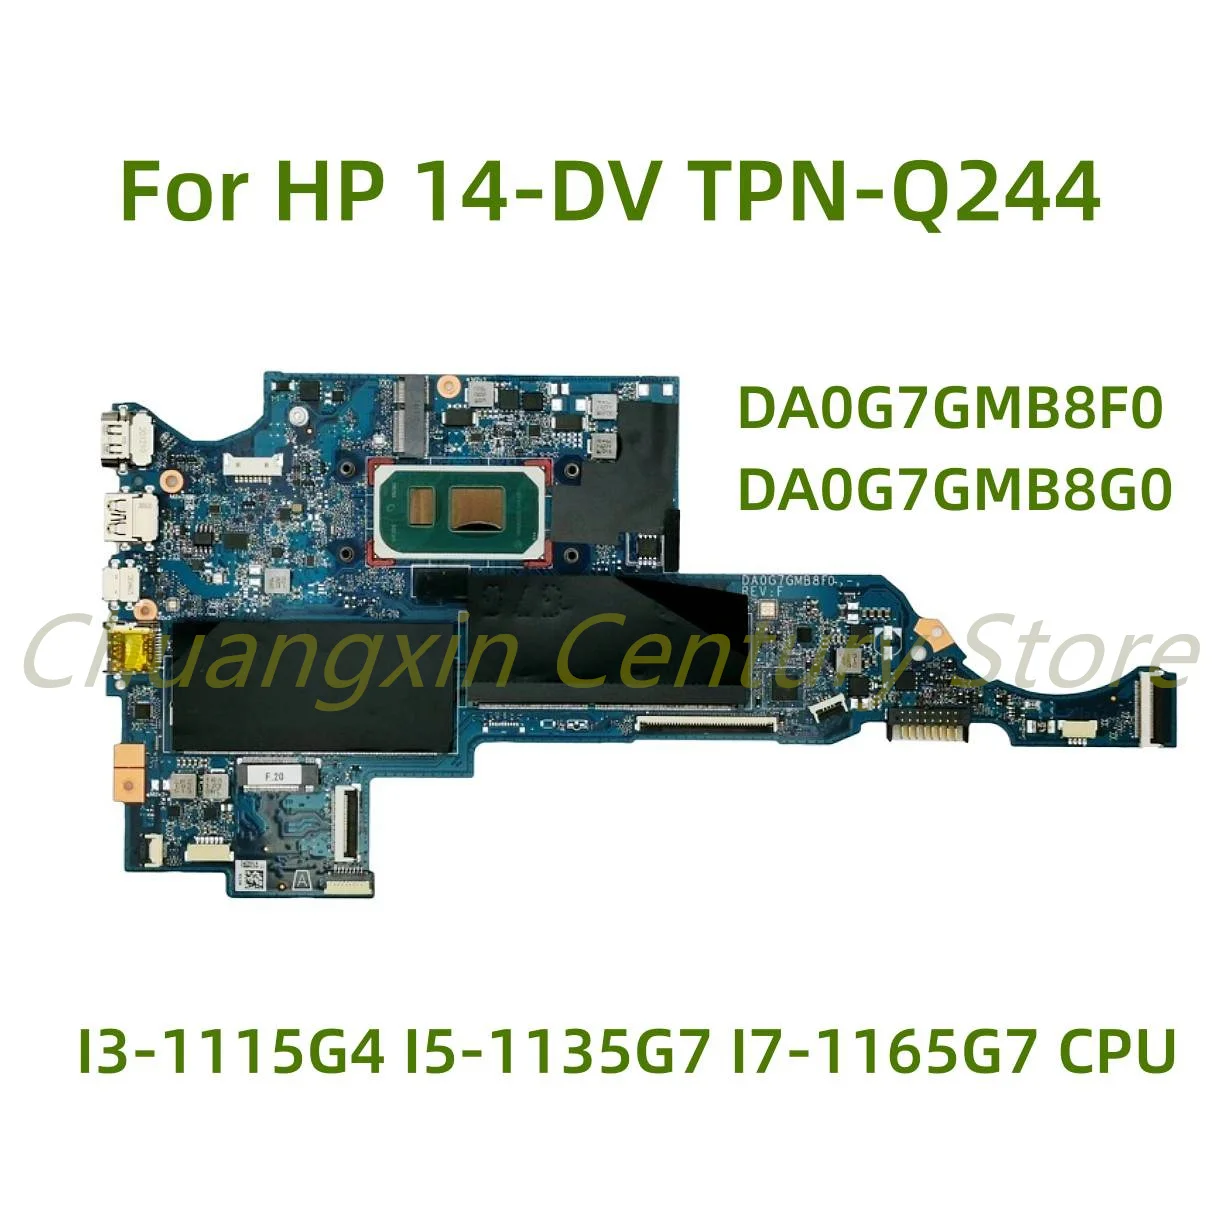 

For HP Pavilion 14-DV TPN-Q244 laptop motherboard DA0G7GMB8F0 DA0G7GMB8G0 with I3-1115G4 I5-1135G7 I7-1165G7 CPU 100% Tested